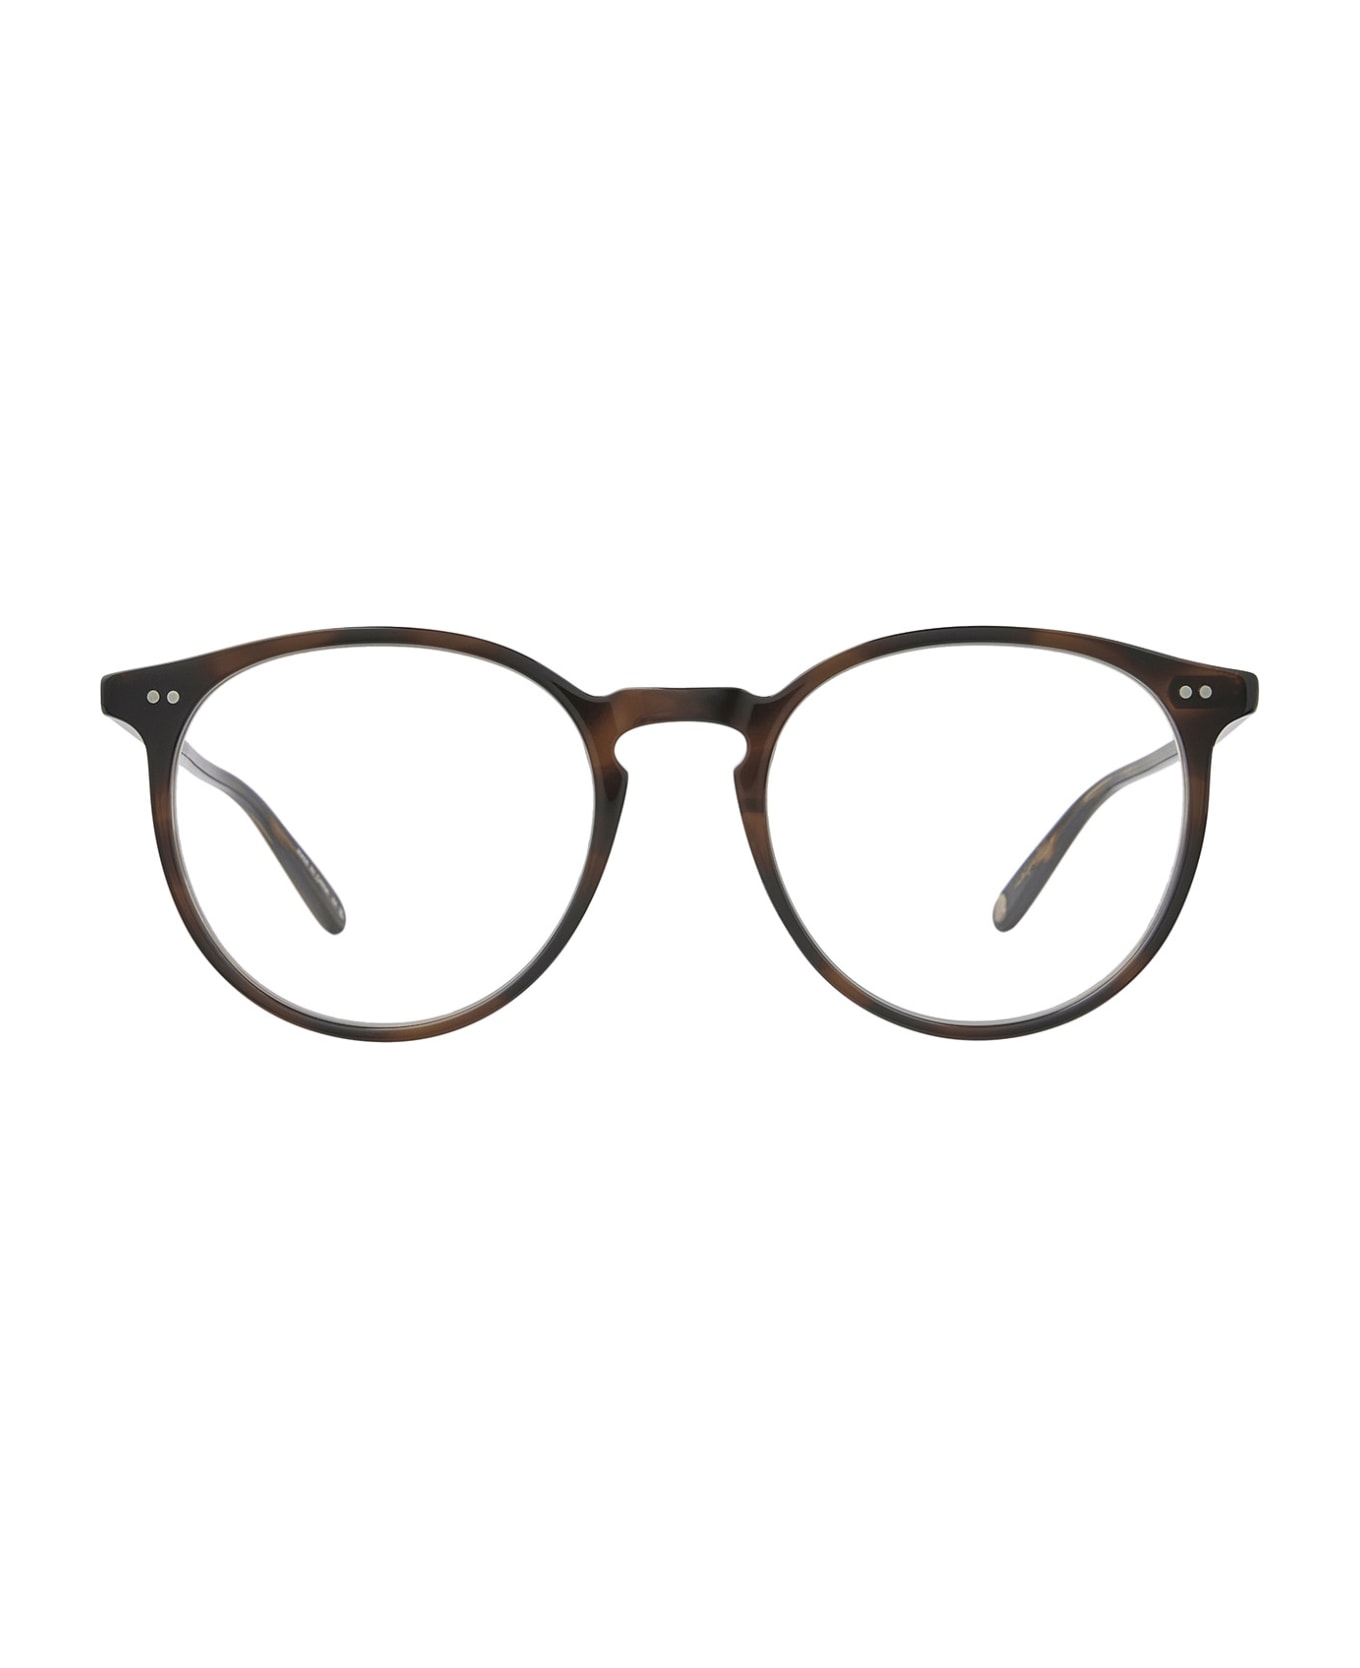 Garrett Leight Morningside Spotted Brown Shell Glasses - Spotted Brown Shell